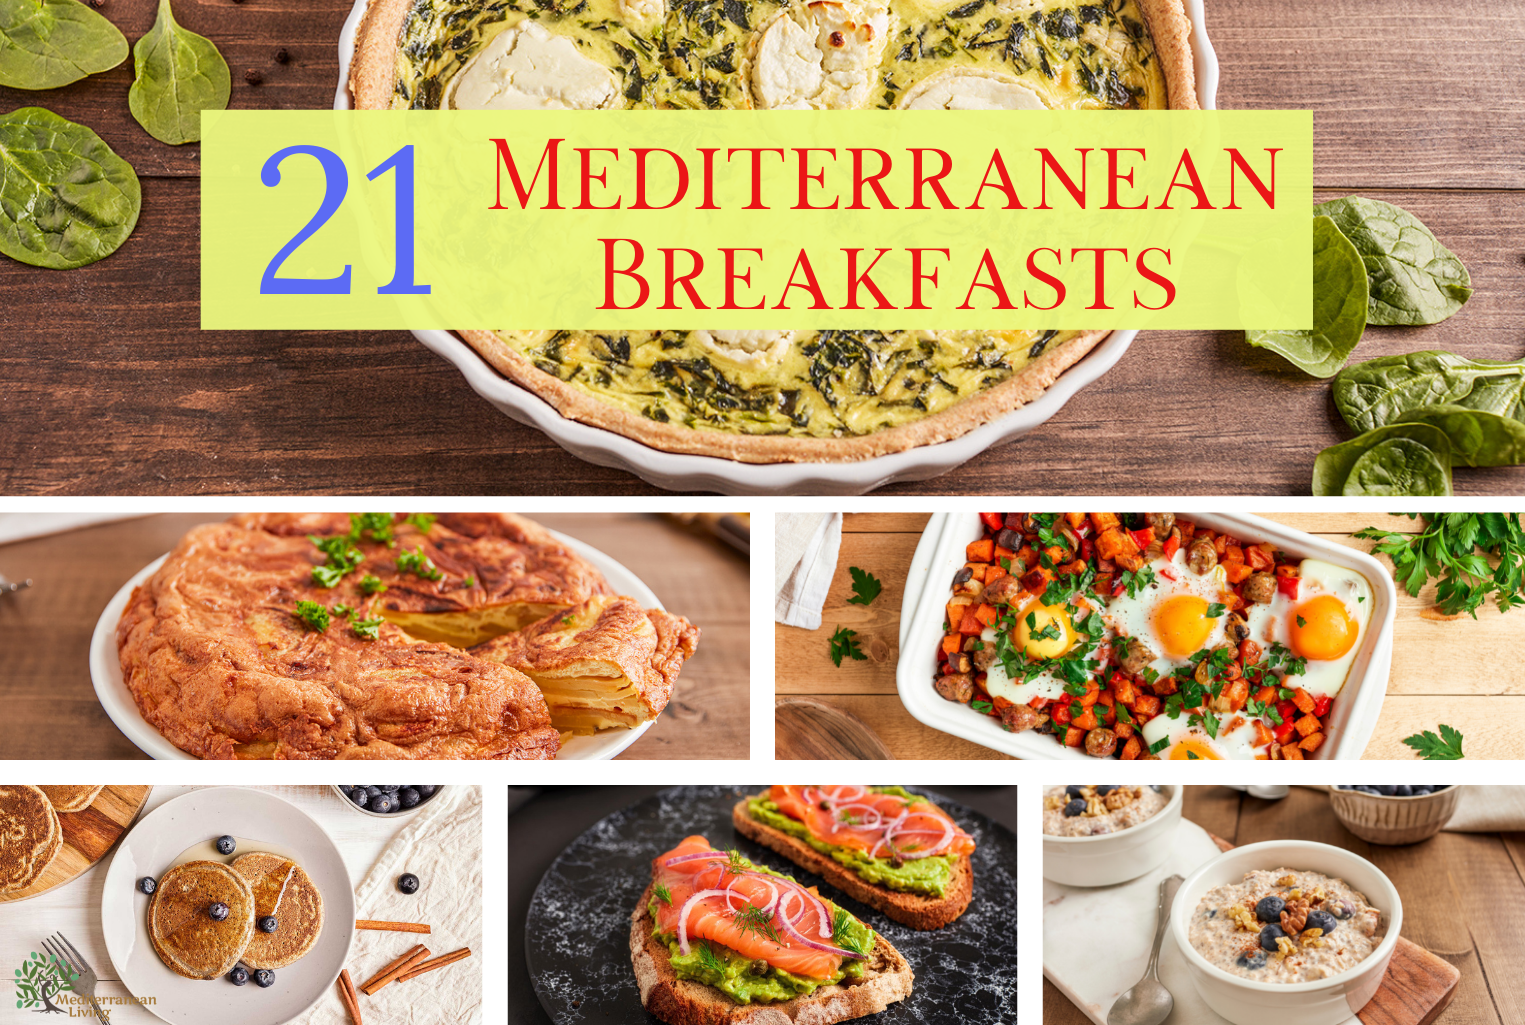 21 Breakfasts from the Mediterranean Diet